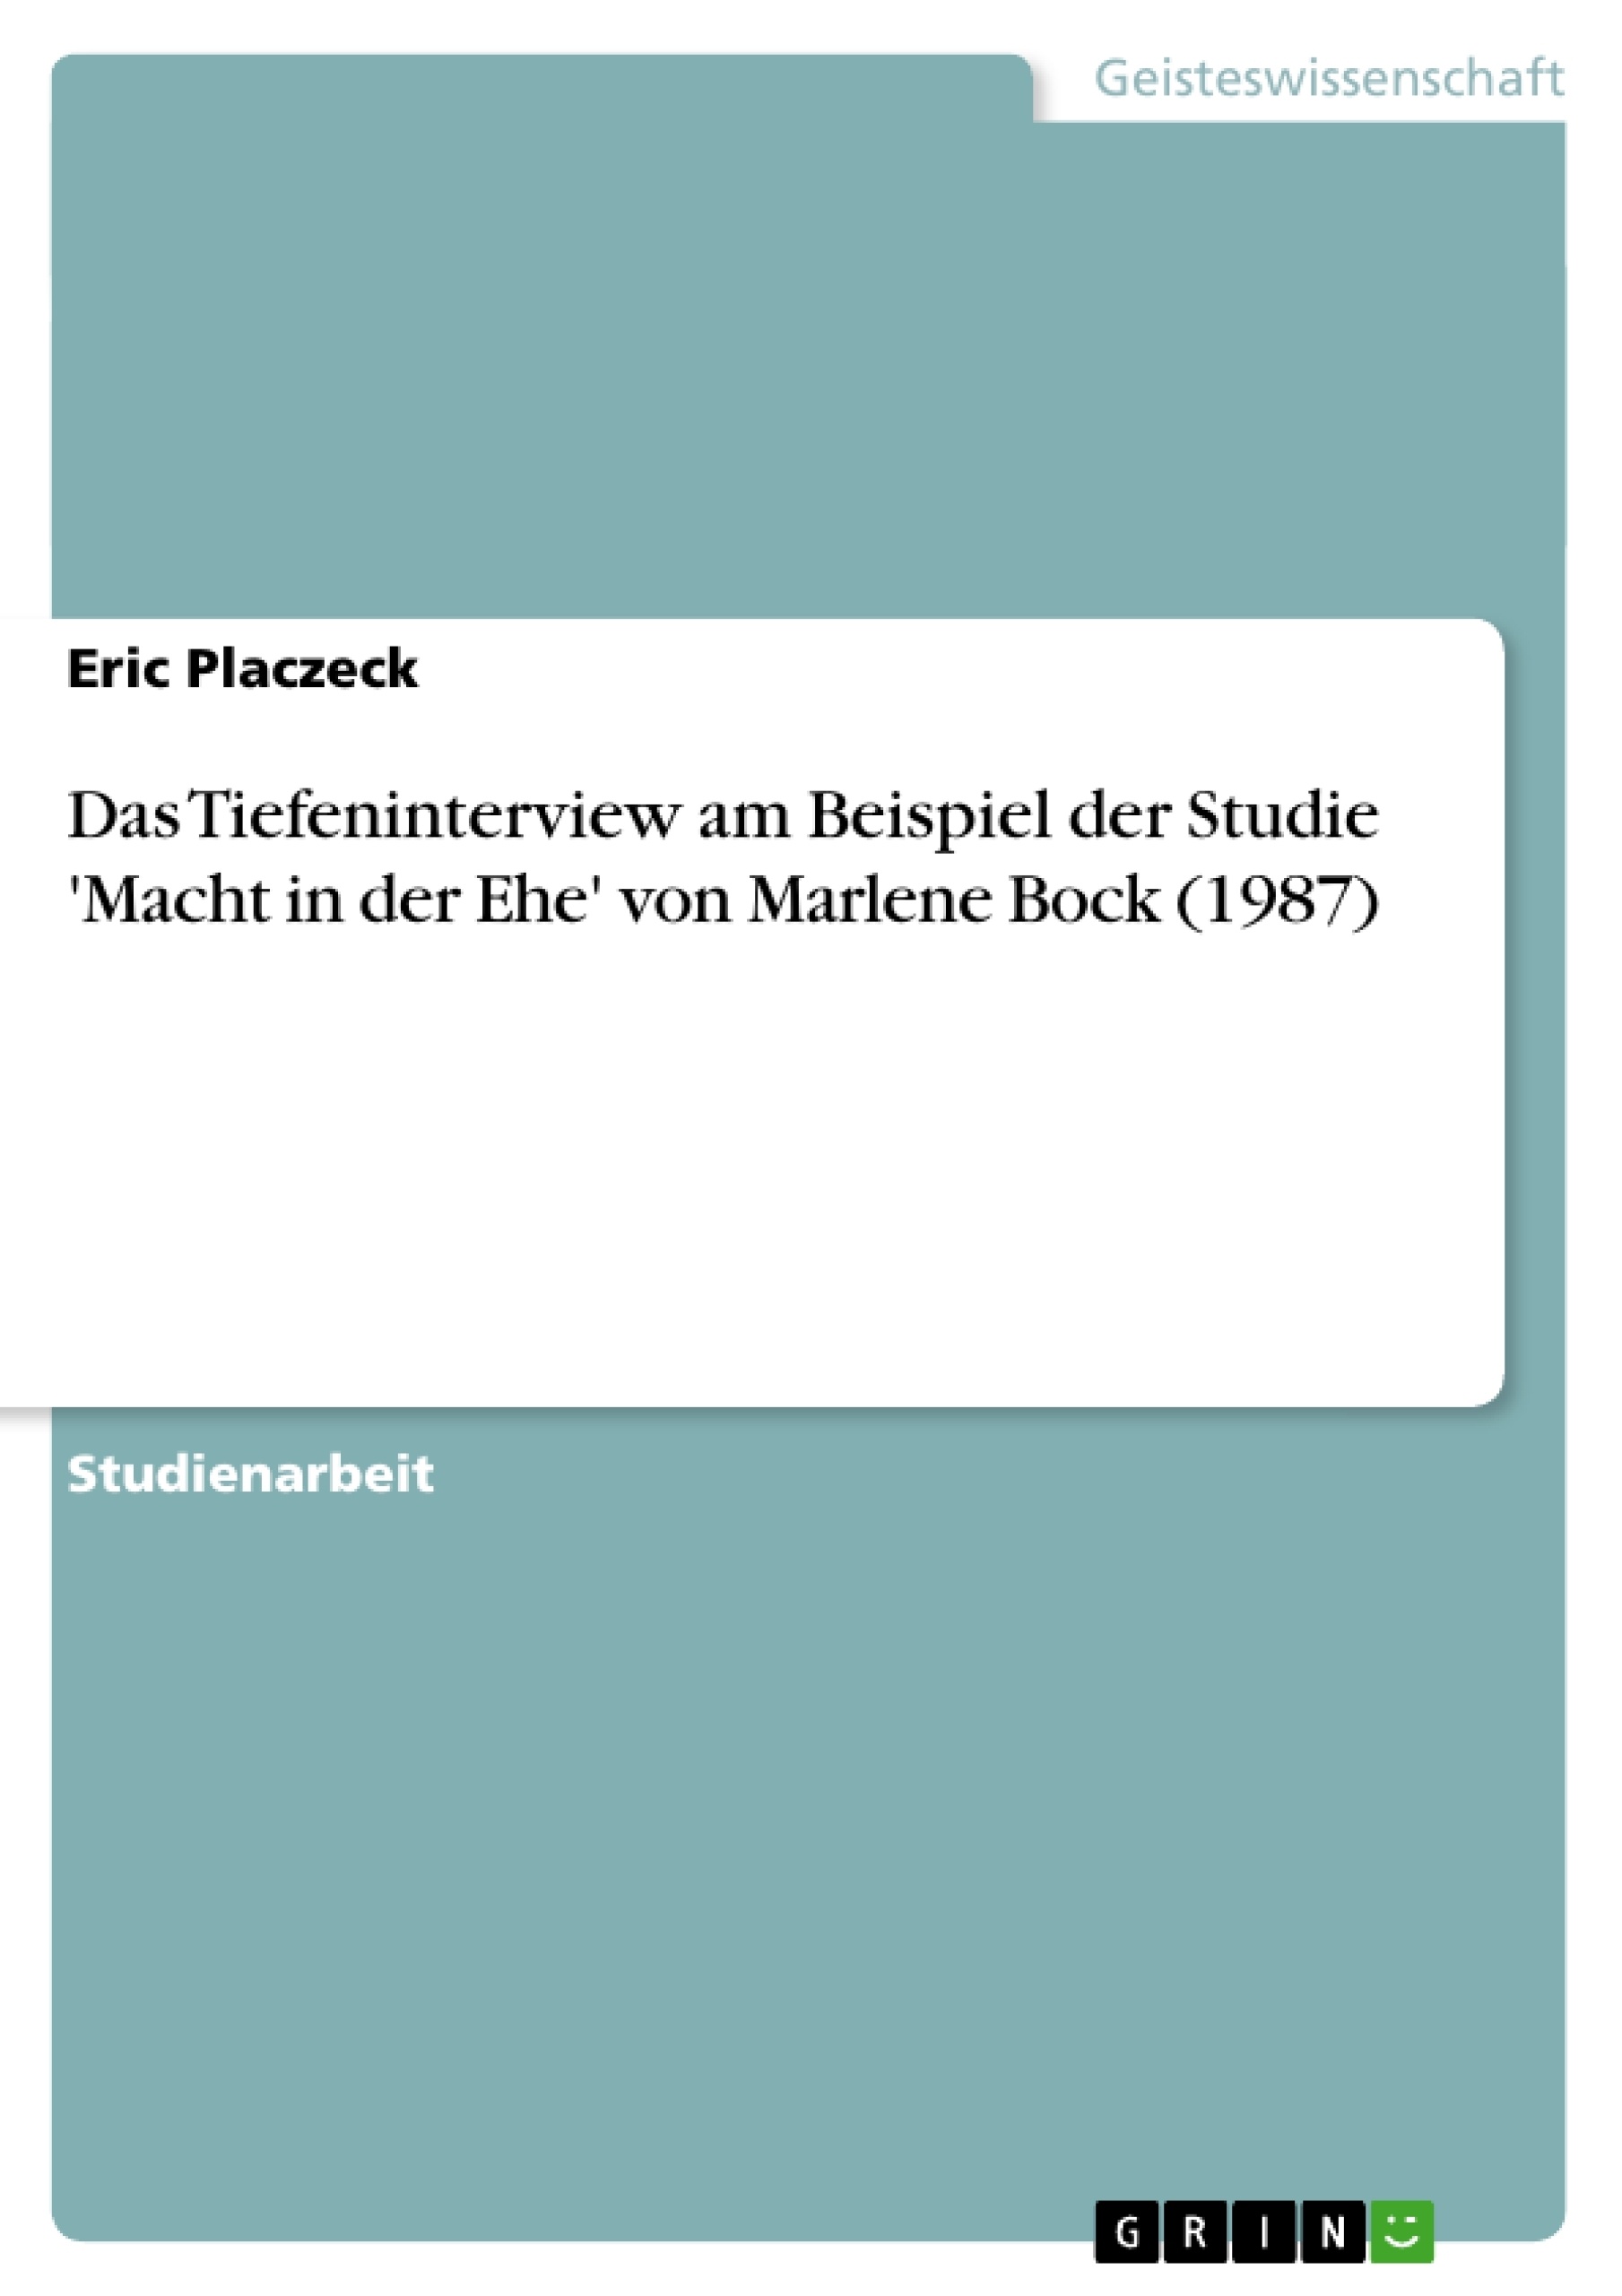 Titre: Das Tiefeninterview am Beispiel der Studie 'Macht in der Ehe' von Marlene Bock (1987)